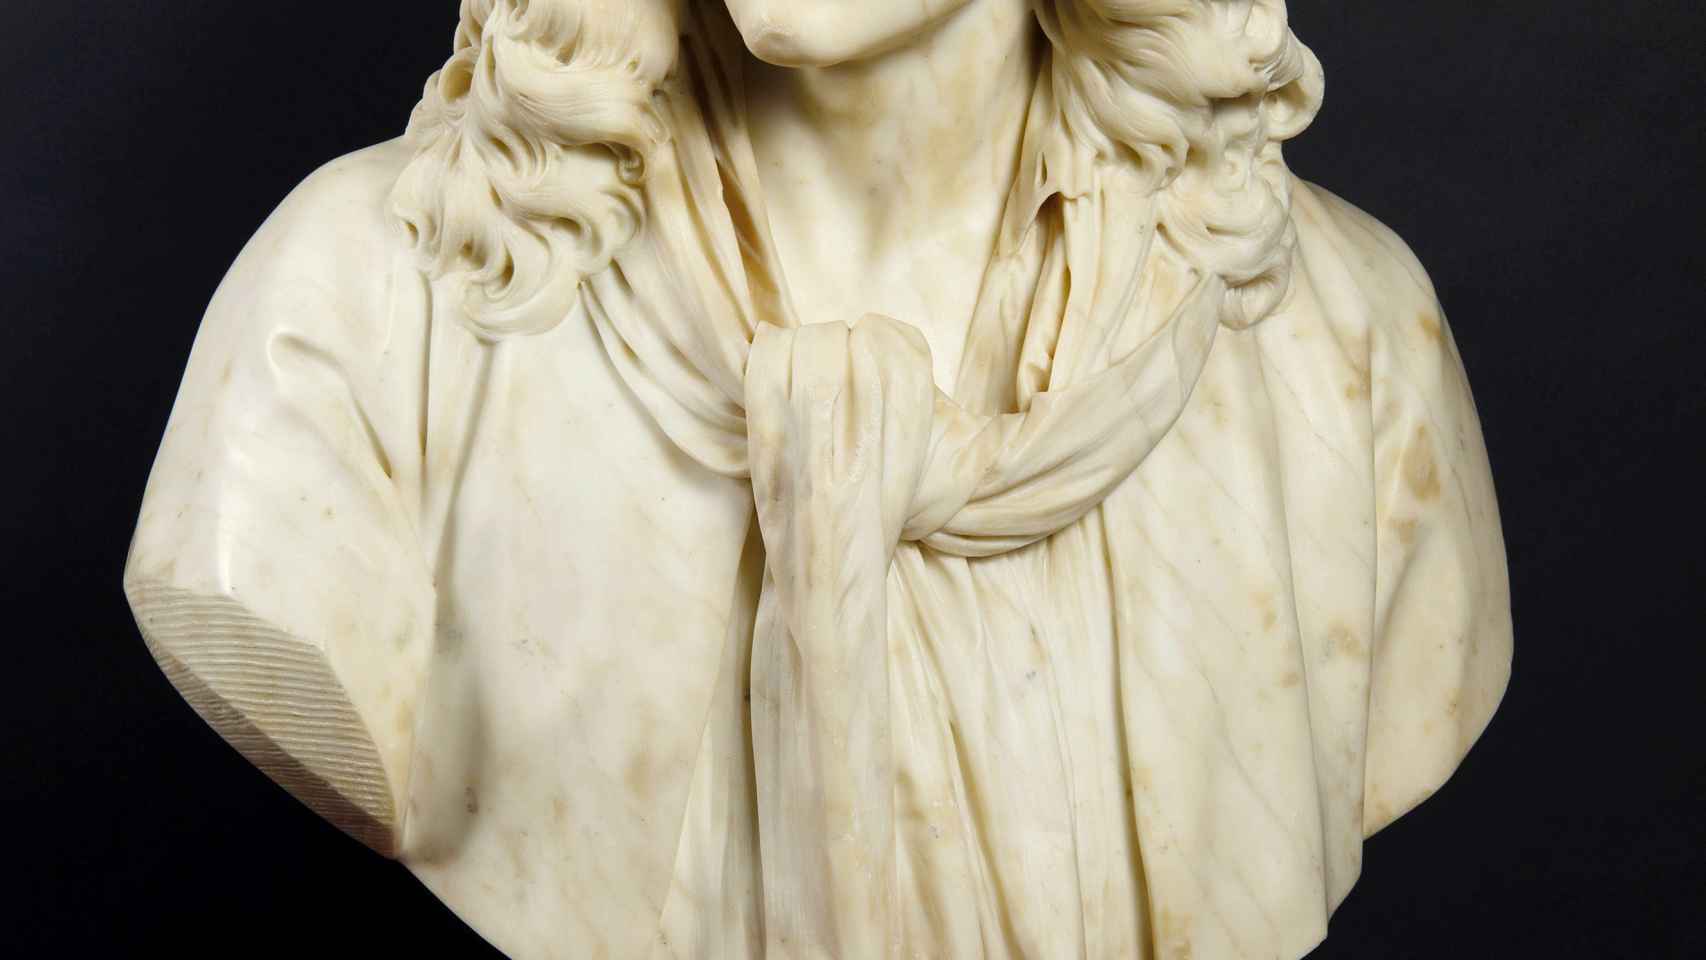 Busto escultorico Molière por Houdon, 1778 (S 141) © A. Dequier, coll. Comédie-Française